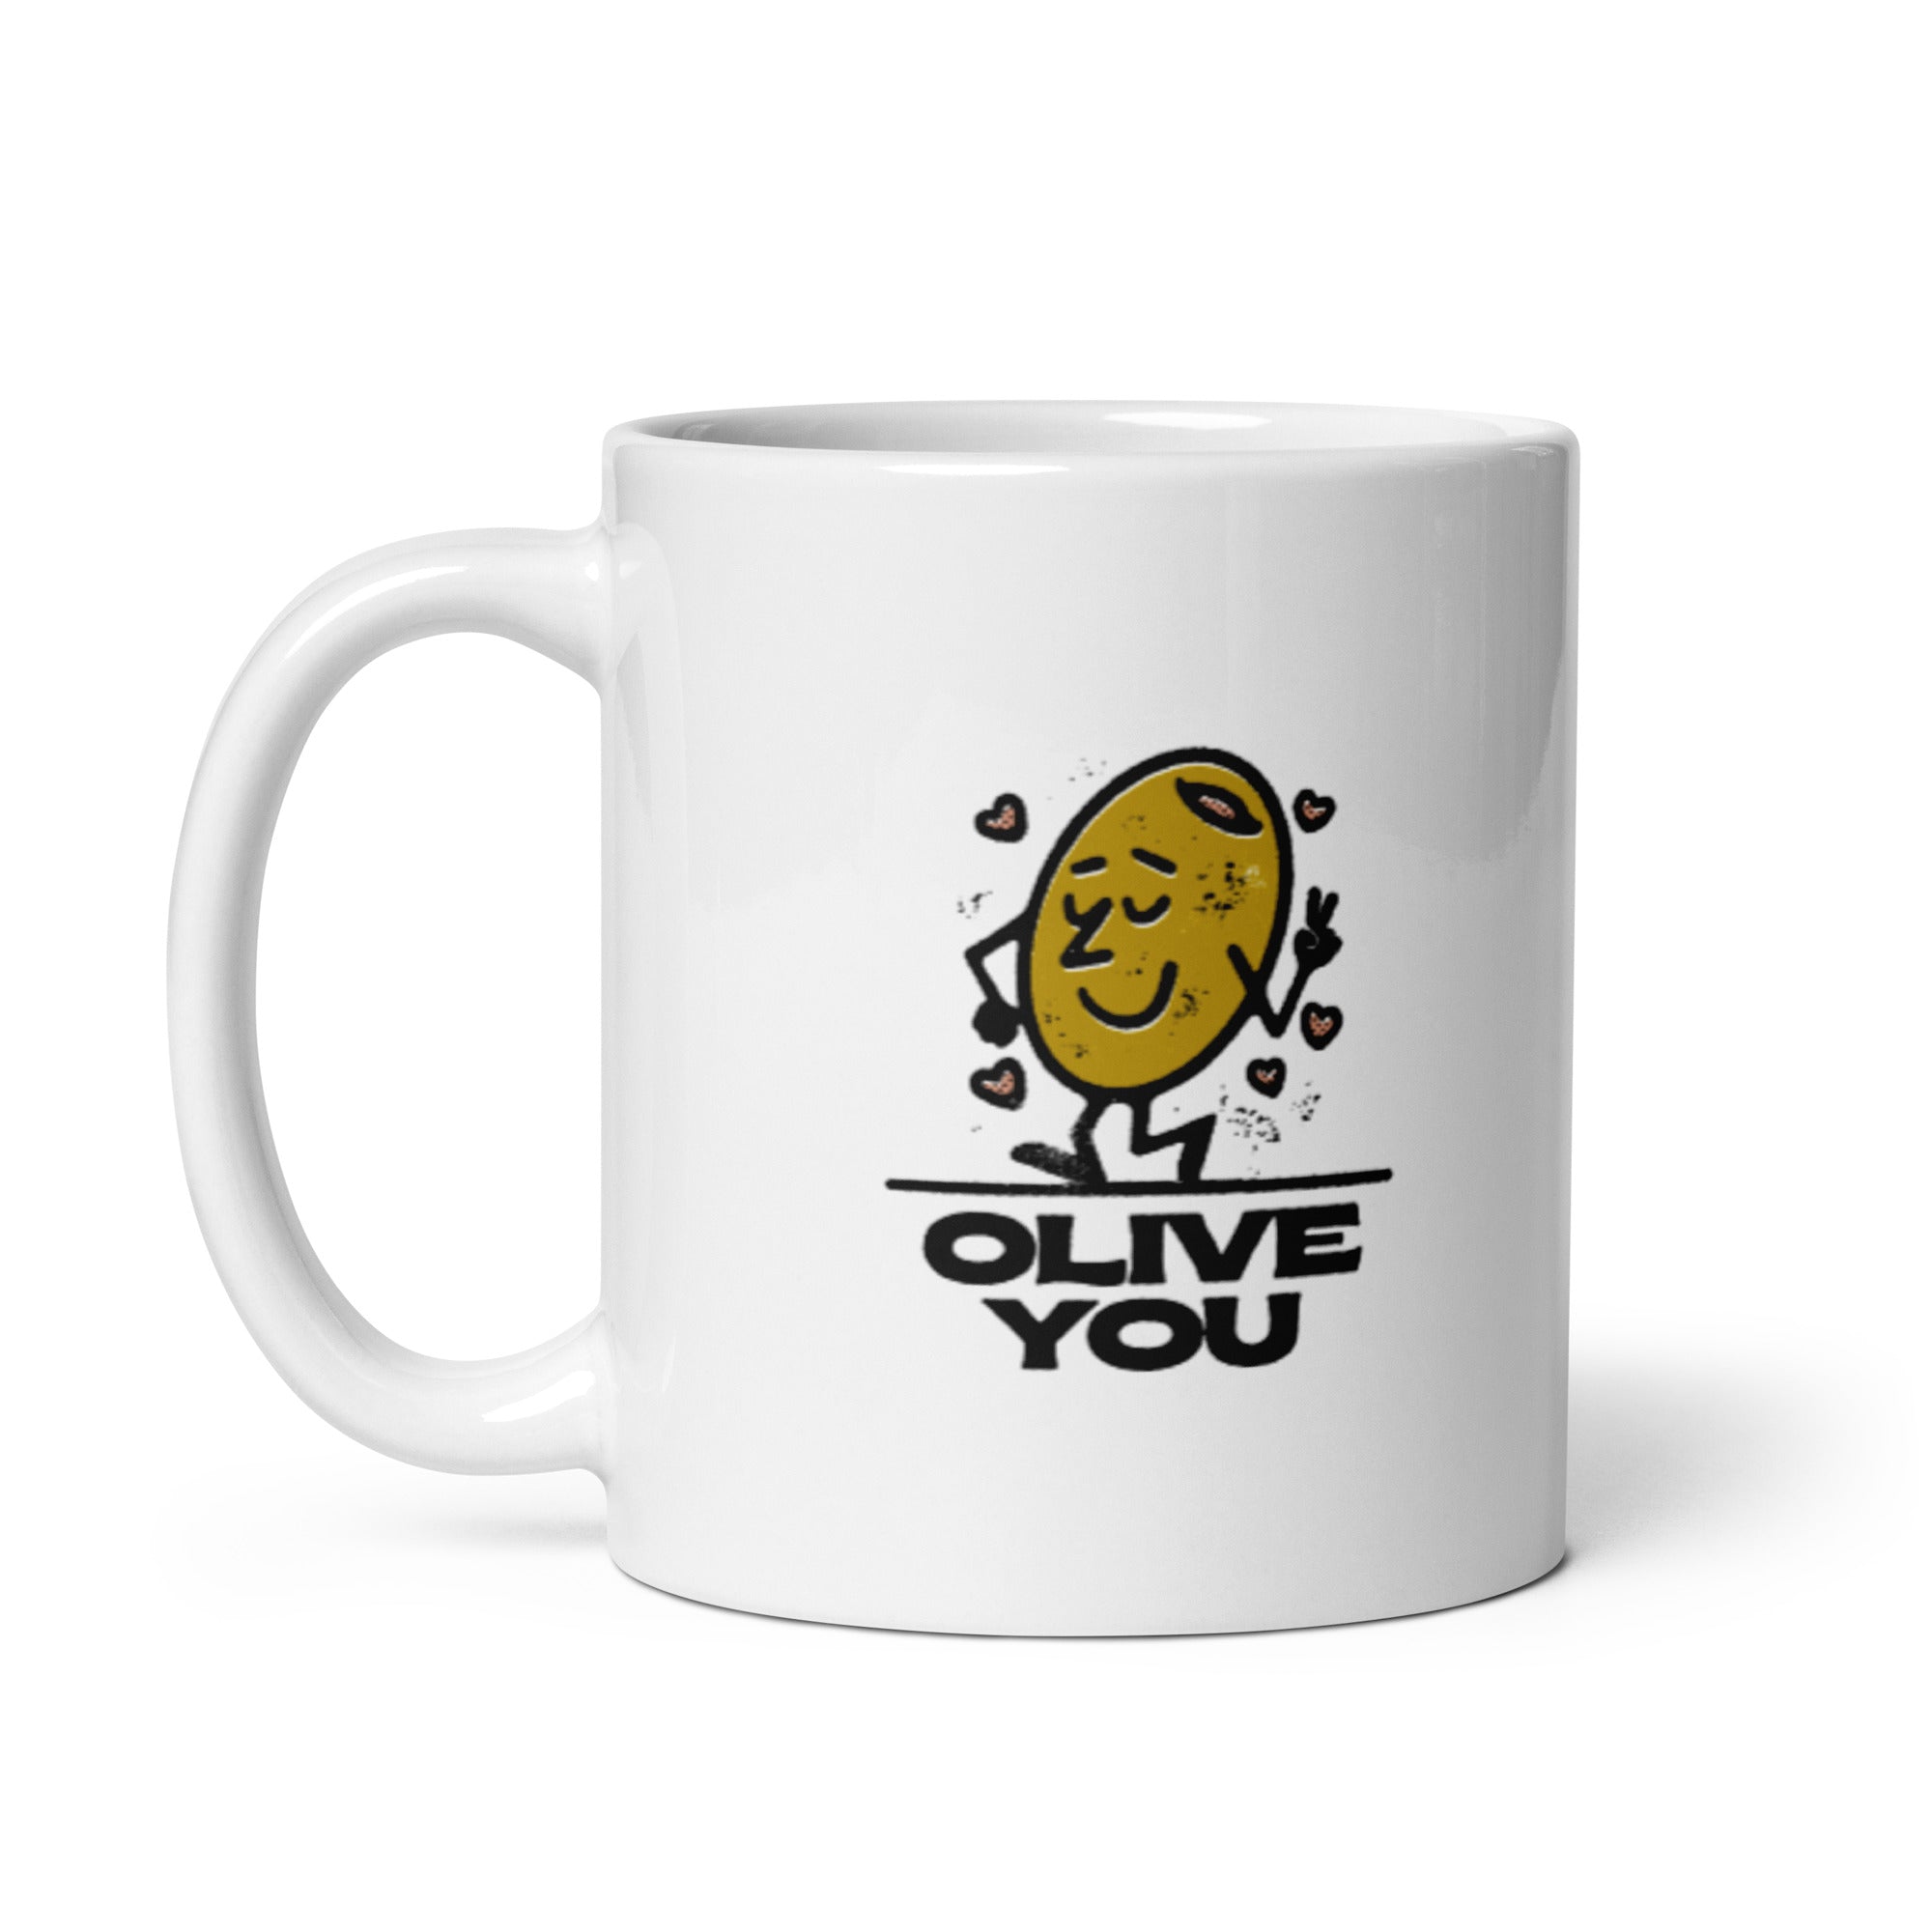 Olive You - White glossy mug